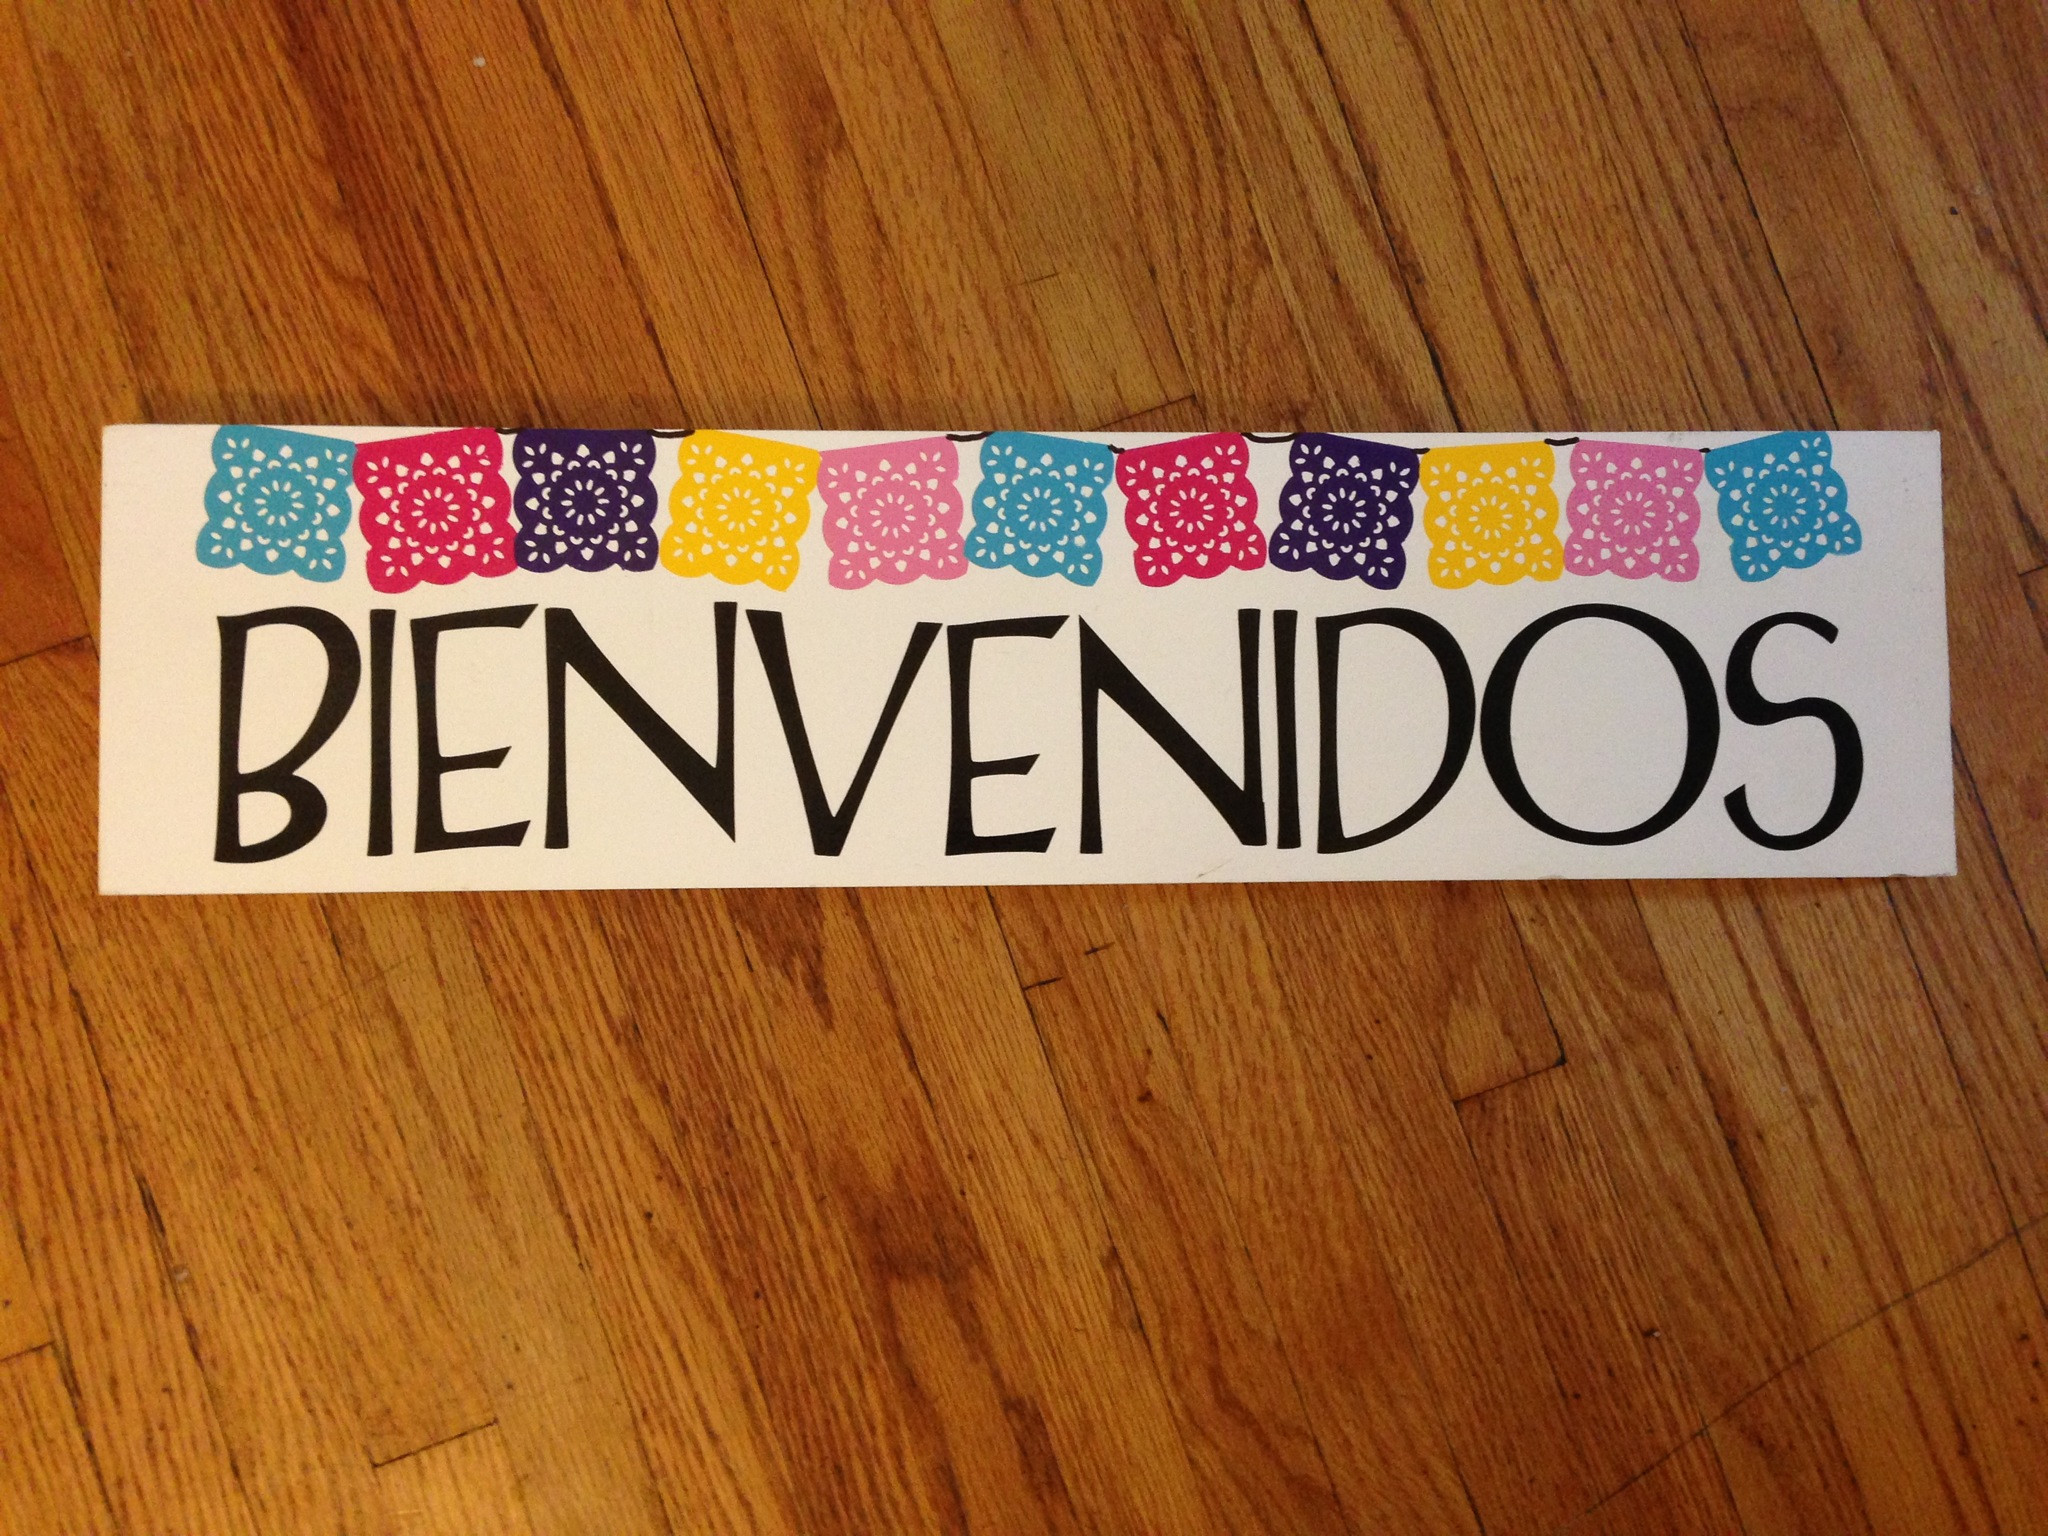 2048x1536 Welcome/bienvenidos papel picado sign. ConfettiMexican FiestaClassroom ...